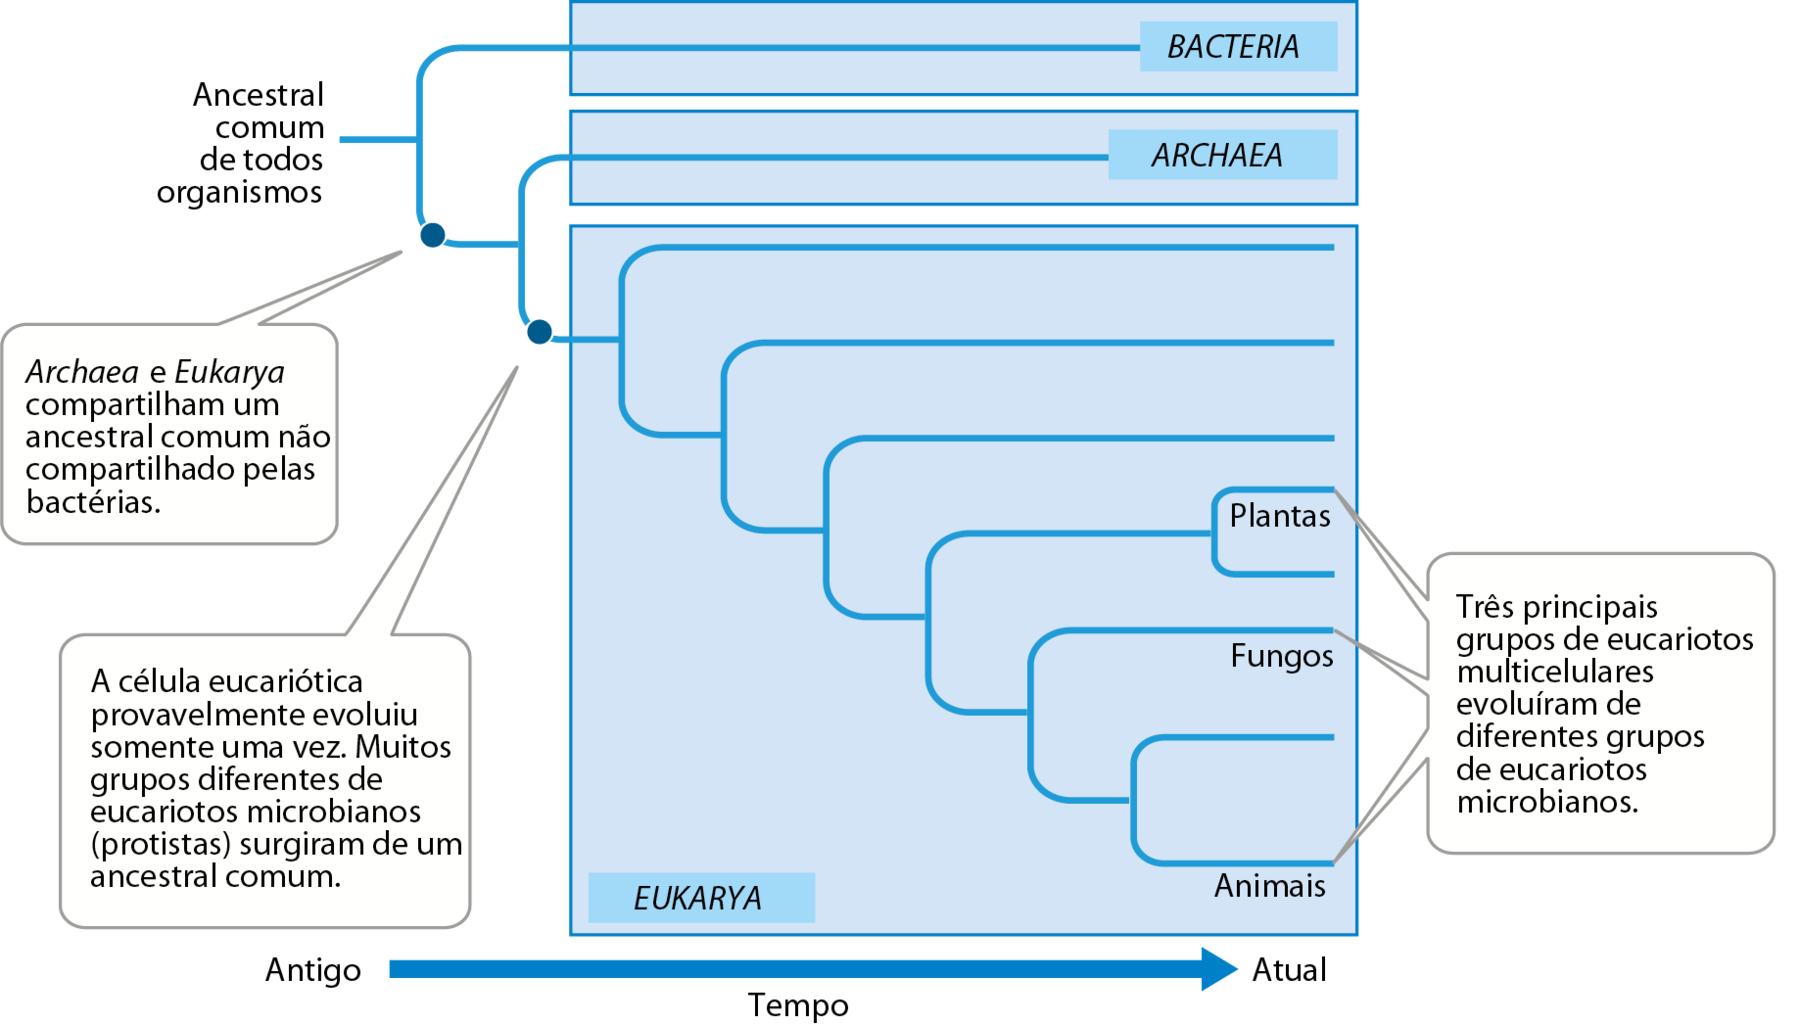 Esquema.  Uma seta para a direita indica tempo, do Antigo para o Atual. Relações entre os seres vivos representadas por fios conectados na forma de um cladograma, com três blocos azuis representando os domínios 'Bacteria', 'Archaea' e 'Eukarya'. Na base dos ramos do cladograma, à esquerda, indicação do ancestral comum a todos os grupos de seres vivos. Dele,  bifurcam-se dois ramos: 'Bacteria' e um ramo indicando ancestral comum entre Archaea e Eukarya sinalizado por um ponto e pelo texto 'Archaea e Eukarya compartilham um ancestral comum não compartilhado pelas bactérias.'  Desse ponto, bifurcam-se os ramos: 'Archaea' e ancestral comum a todos os Eucarya, sinalizado por um ponto e pelo texto: 'A célula eucariótica provavelmente evoluiu somente uma vez. Muitos grupos diferentes de eucariotos microbianos (protistas) surgiram de um ancestral comum.' Nas pontas dos ramos, à direita do esquema, estão representados os ramos 'Plantas', 'Fungos' e 'Animais' com o texto: 'Três principais grupos de eucariotos multicelulares evoluíram de diferentes grupos de eucariotos microbianos.'